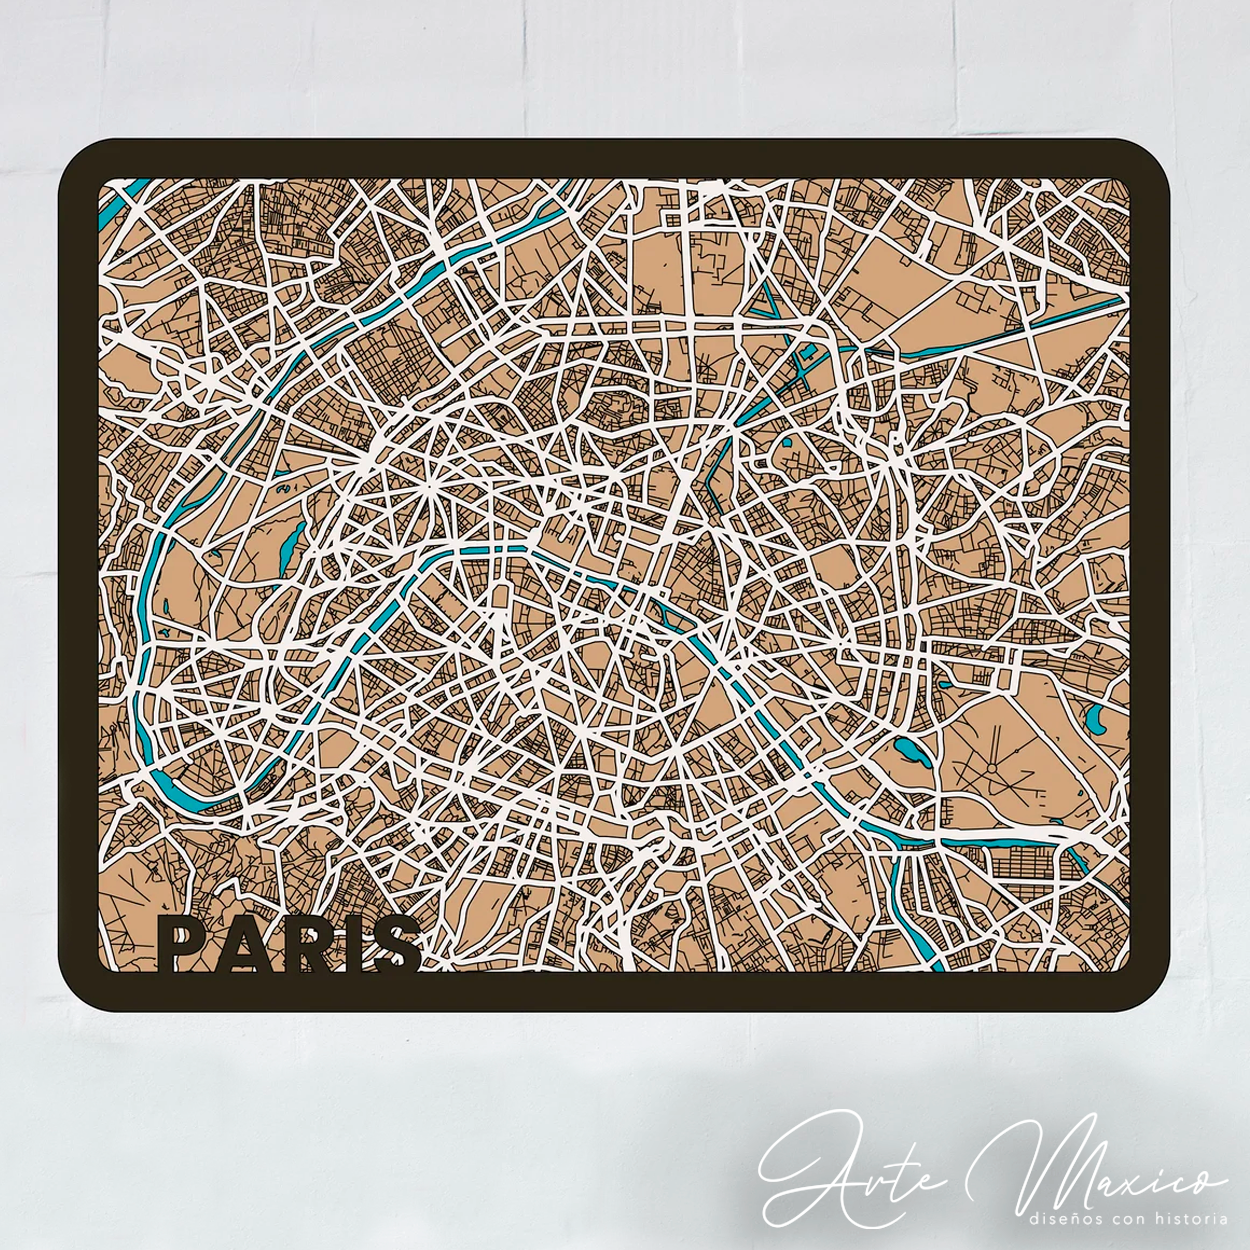 Calles de París